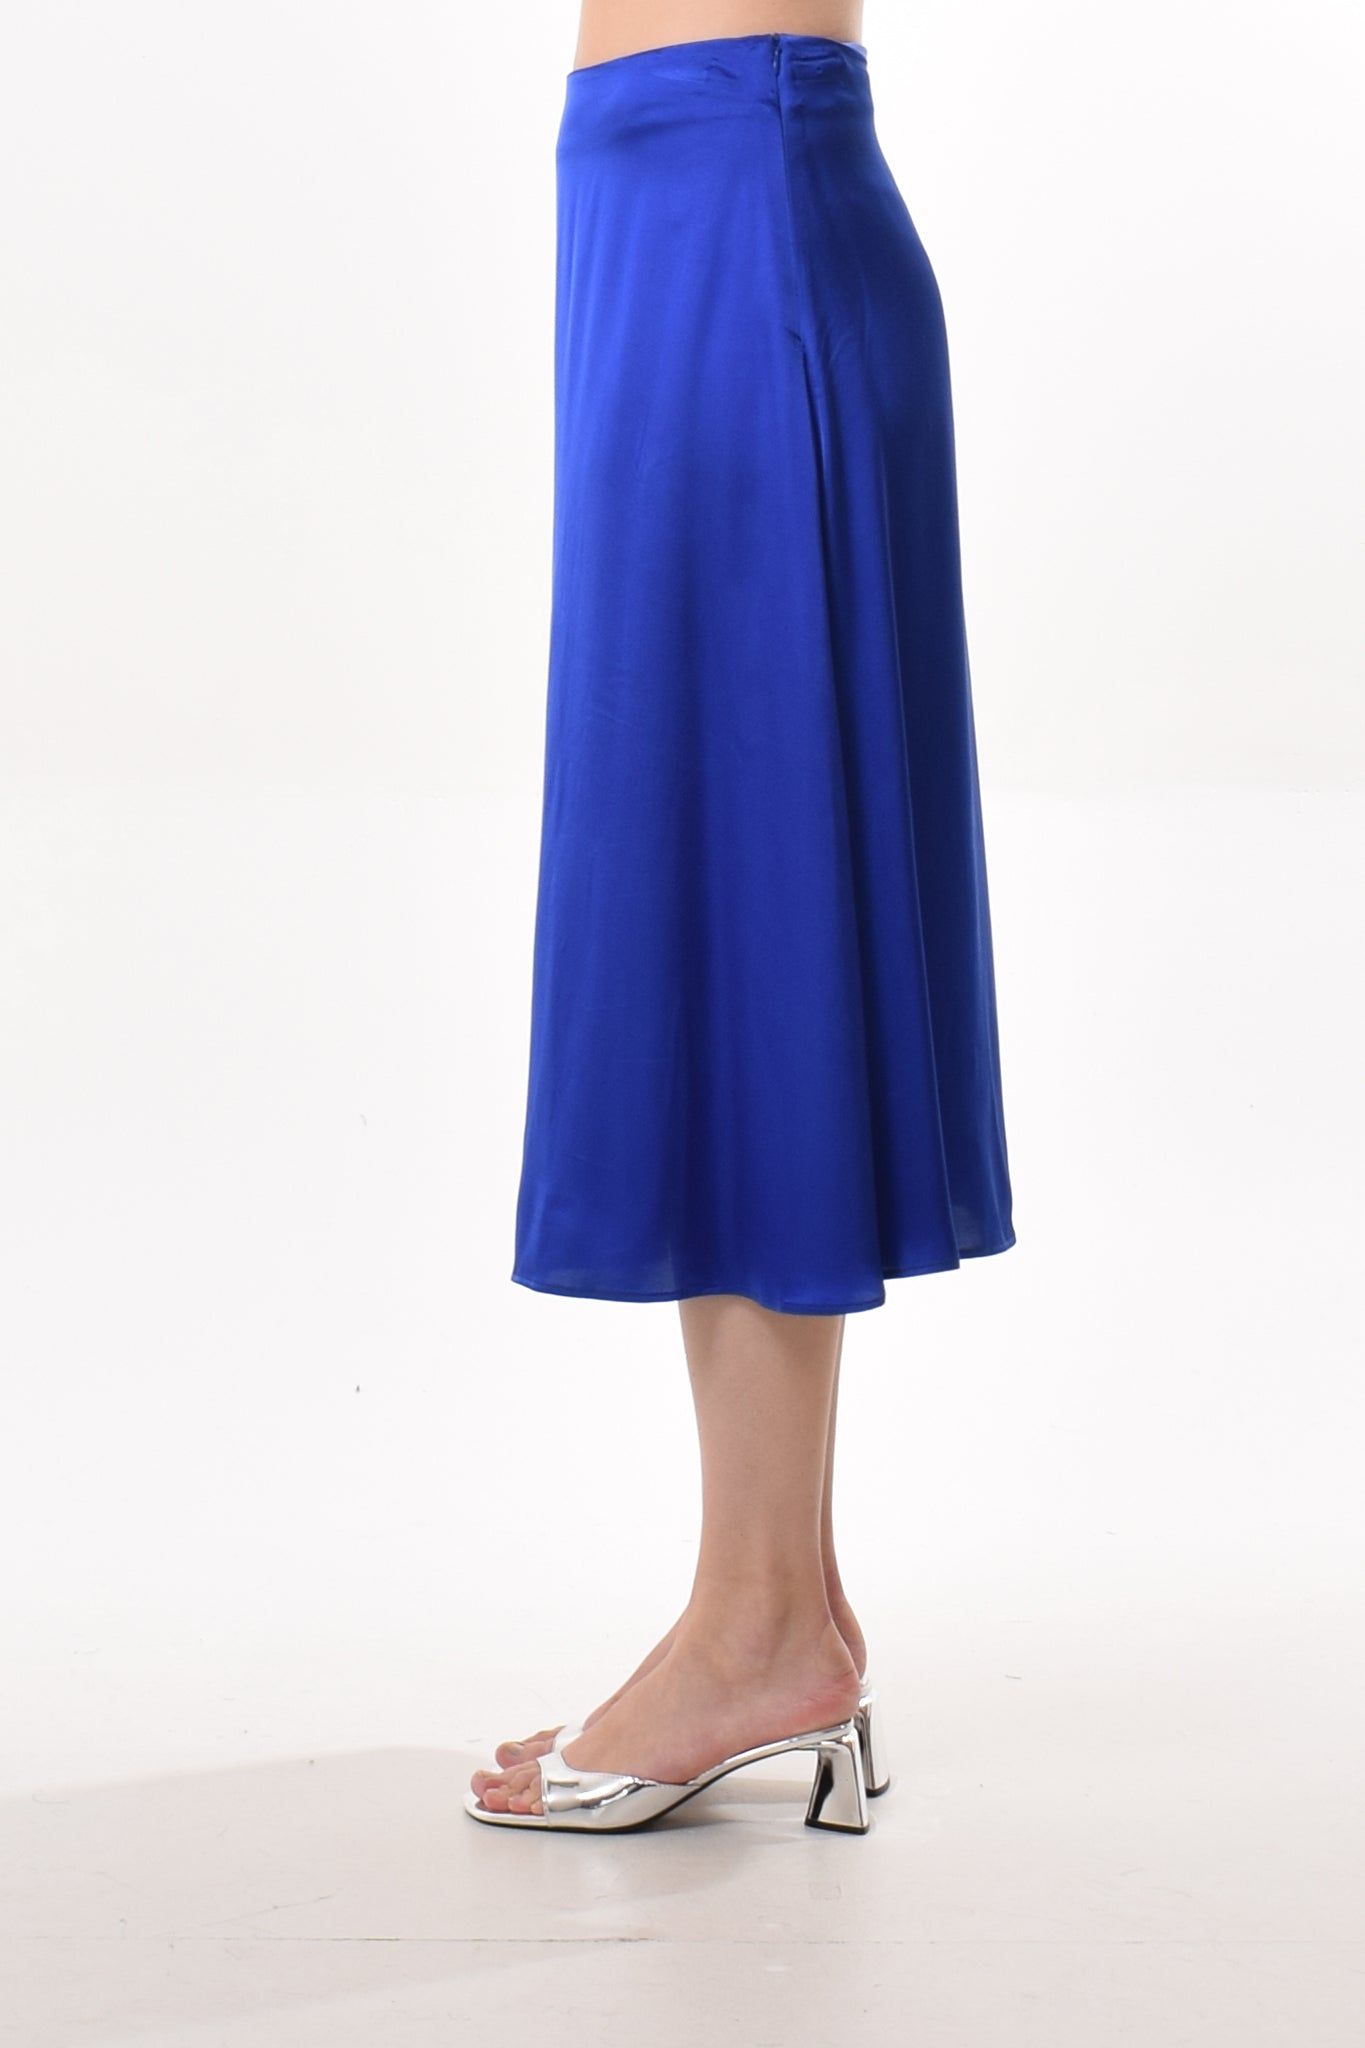 Fez skirt in Bleu